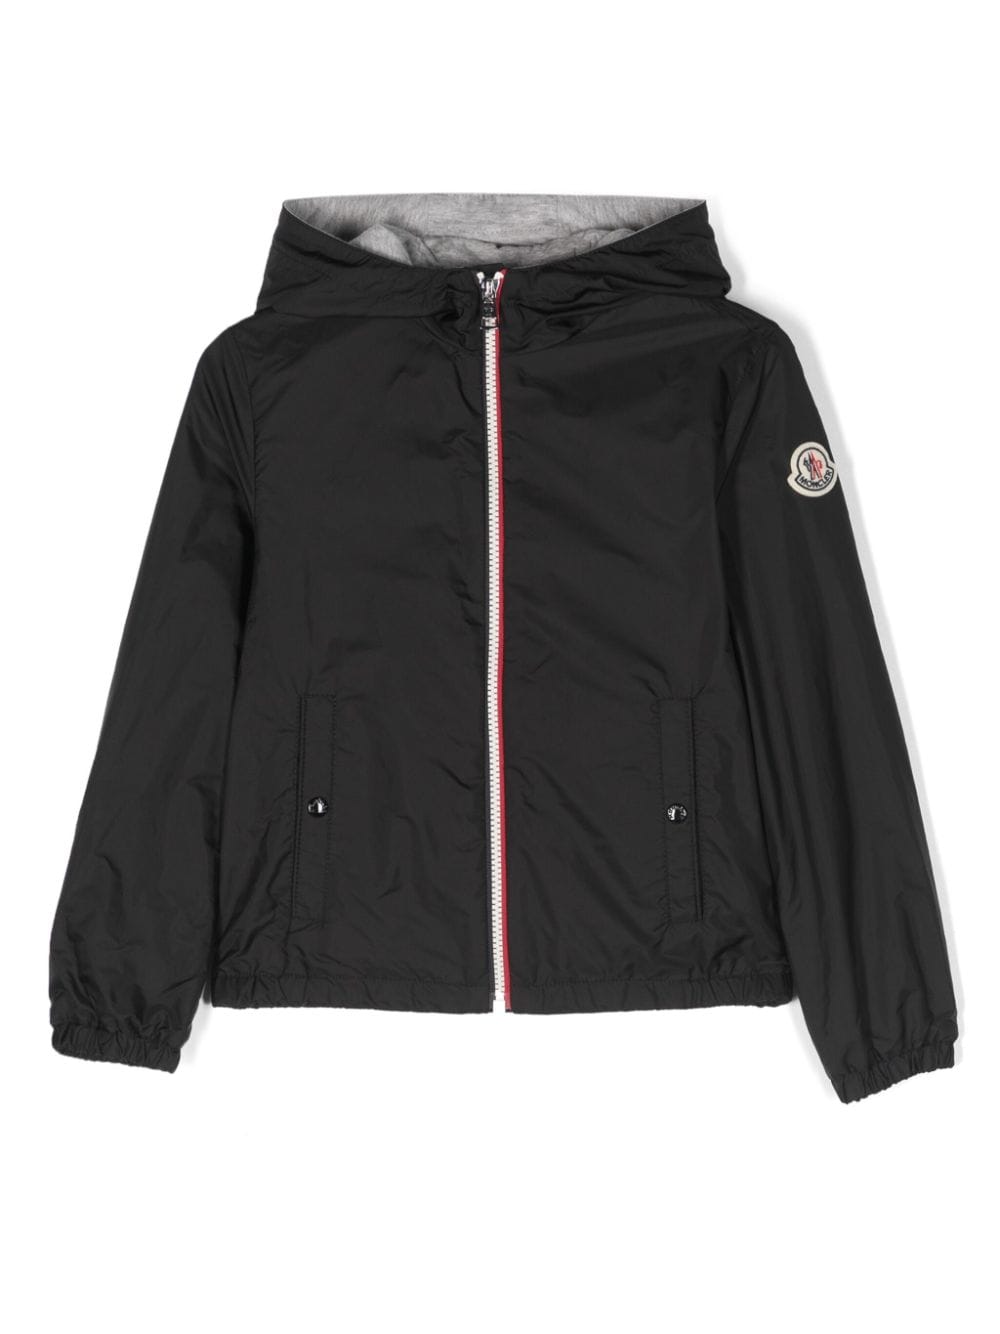 Moncler Enfant New Urville hooded jacket - Black von Moncler Enfant